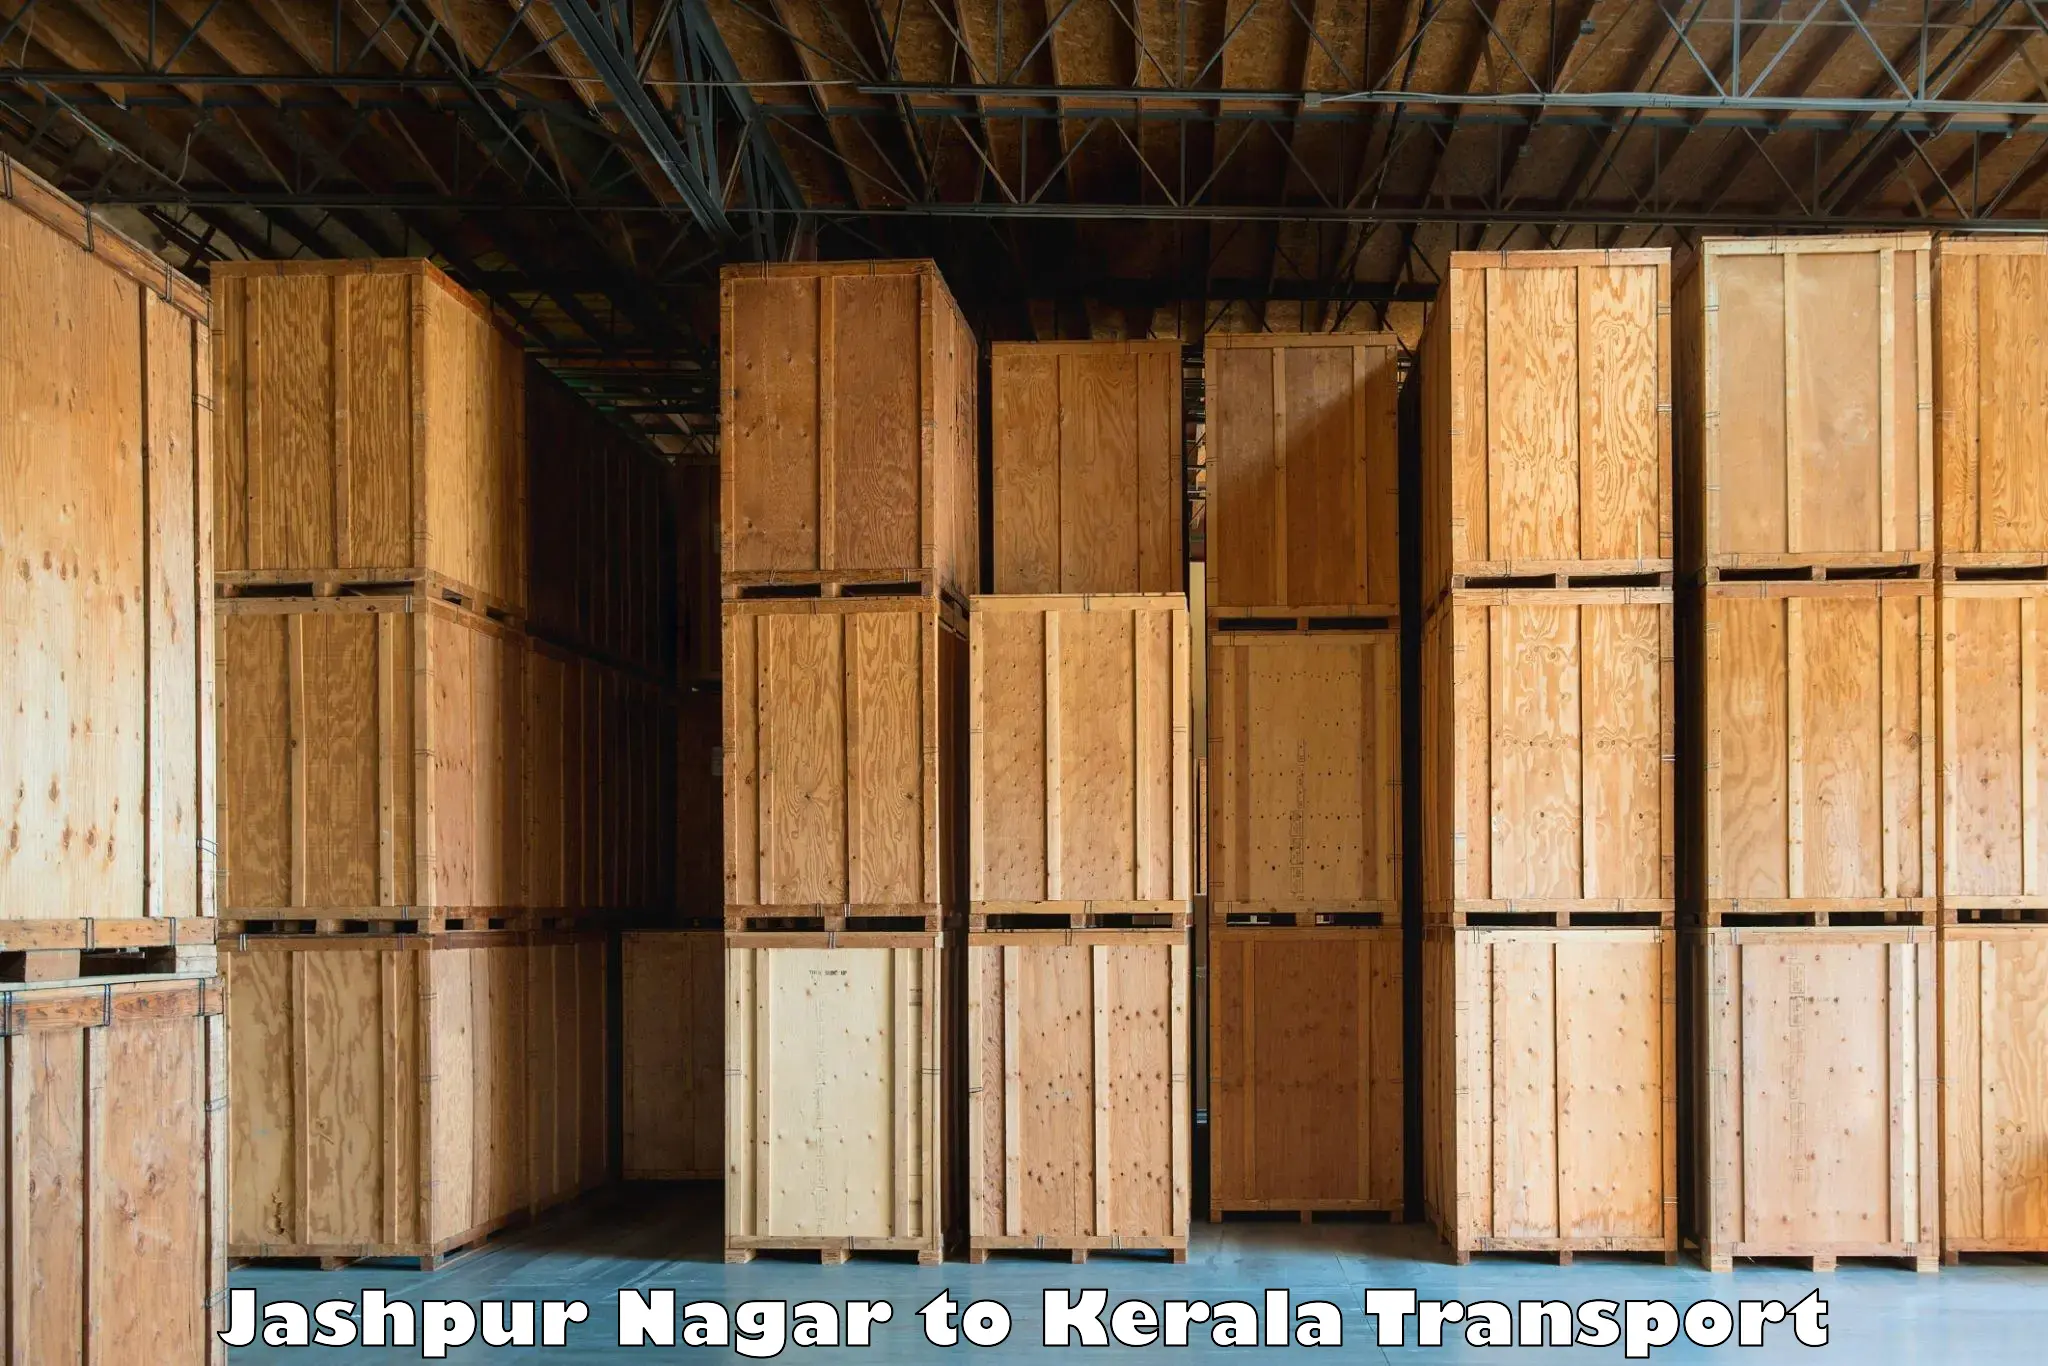 Daily transport service Jashpur Nagar to Ponekkara